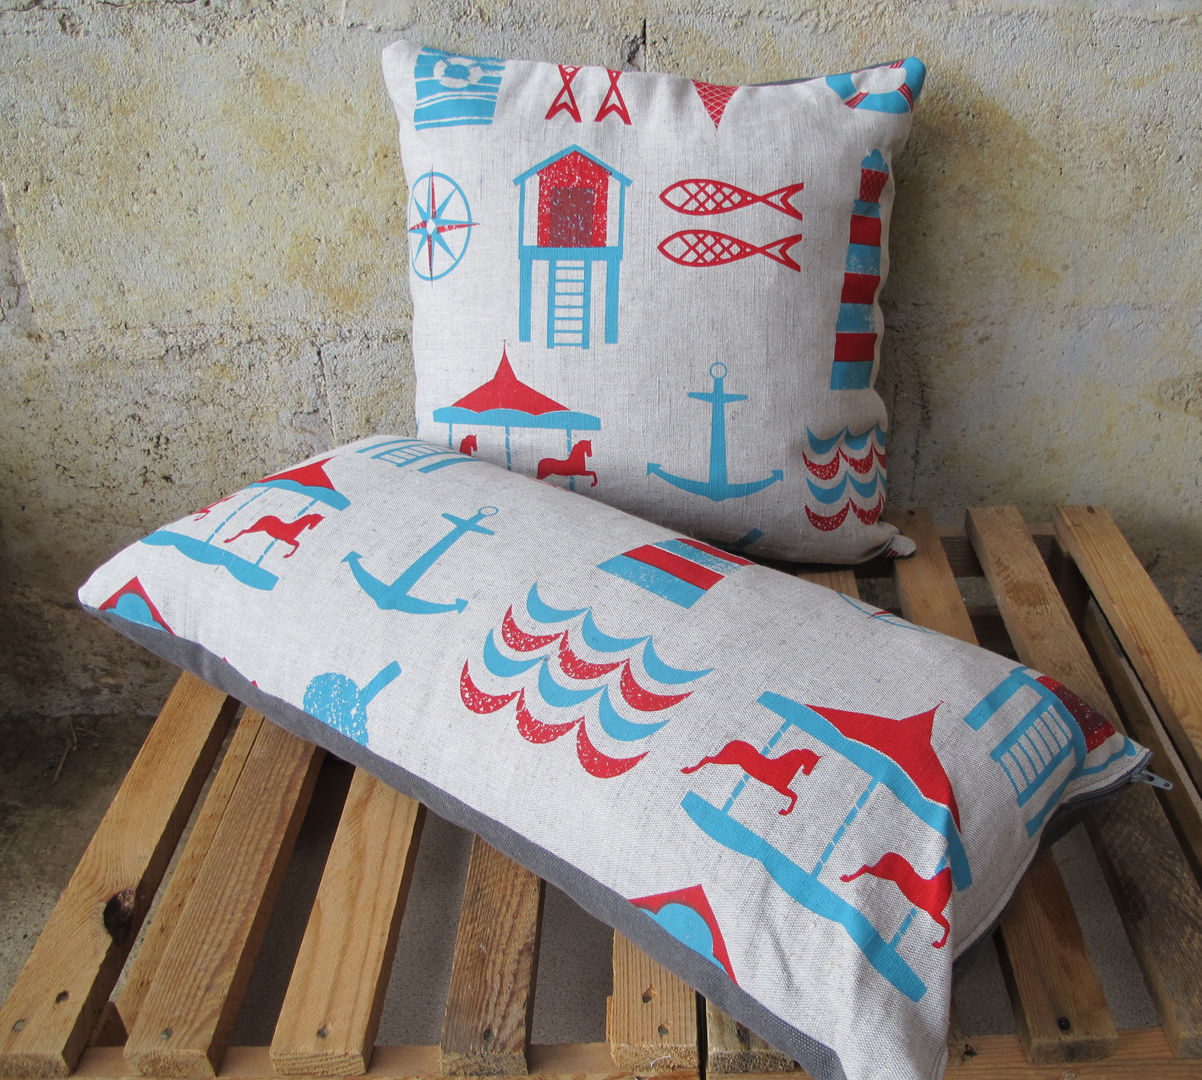 Seaside Print Cushion Anna Bird Textiles Dormitorios modernos: Ideas, imágenes y decoración Textiles